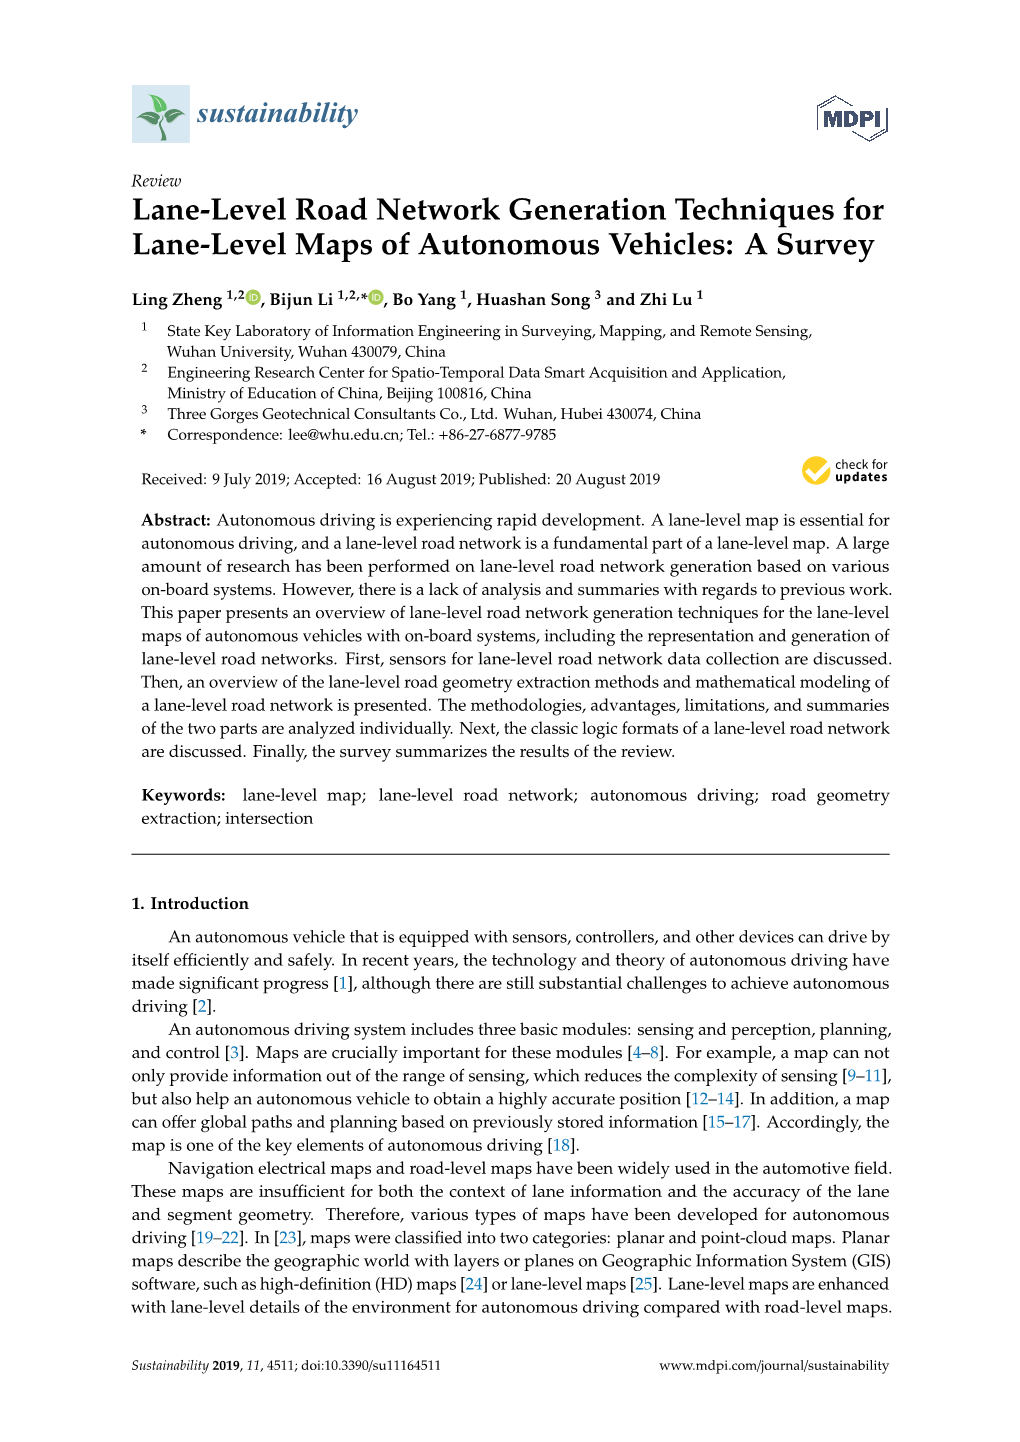 Lane-Level Road Network Generation Techniques for Lane-Level Maps of Autonomous Vehicles: a Survey